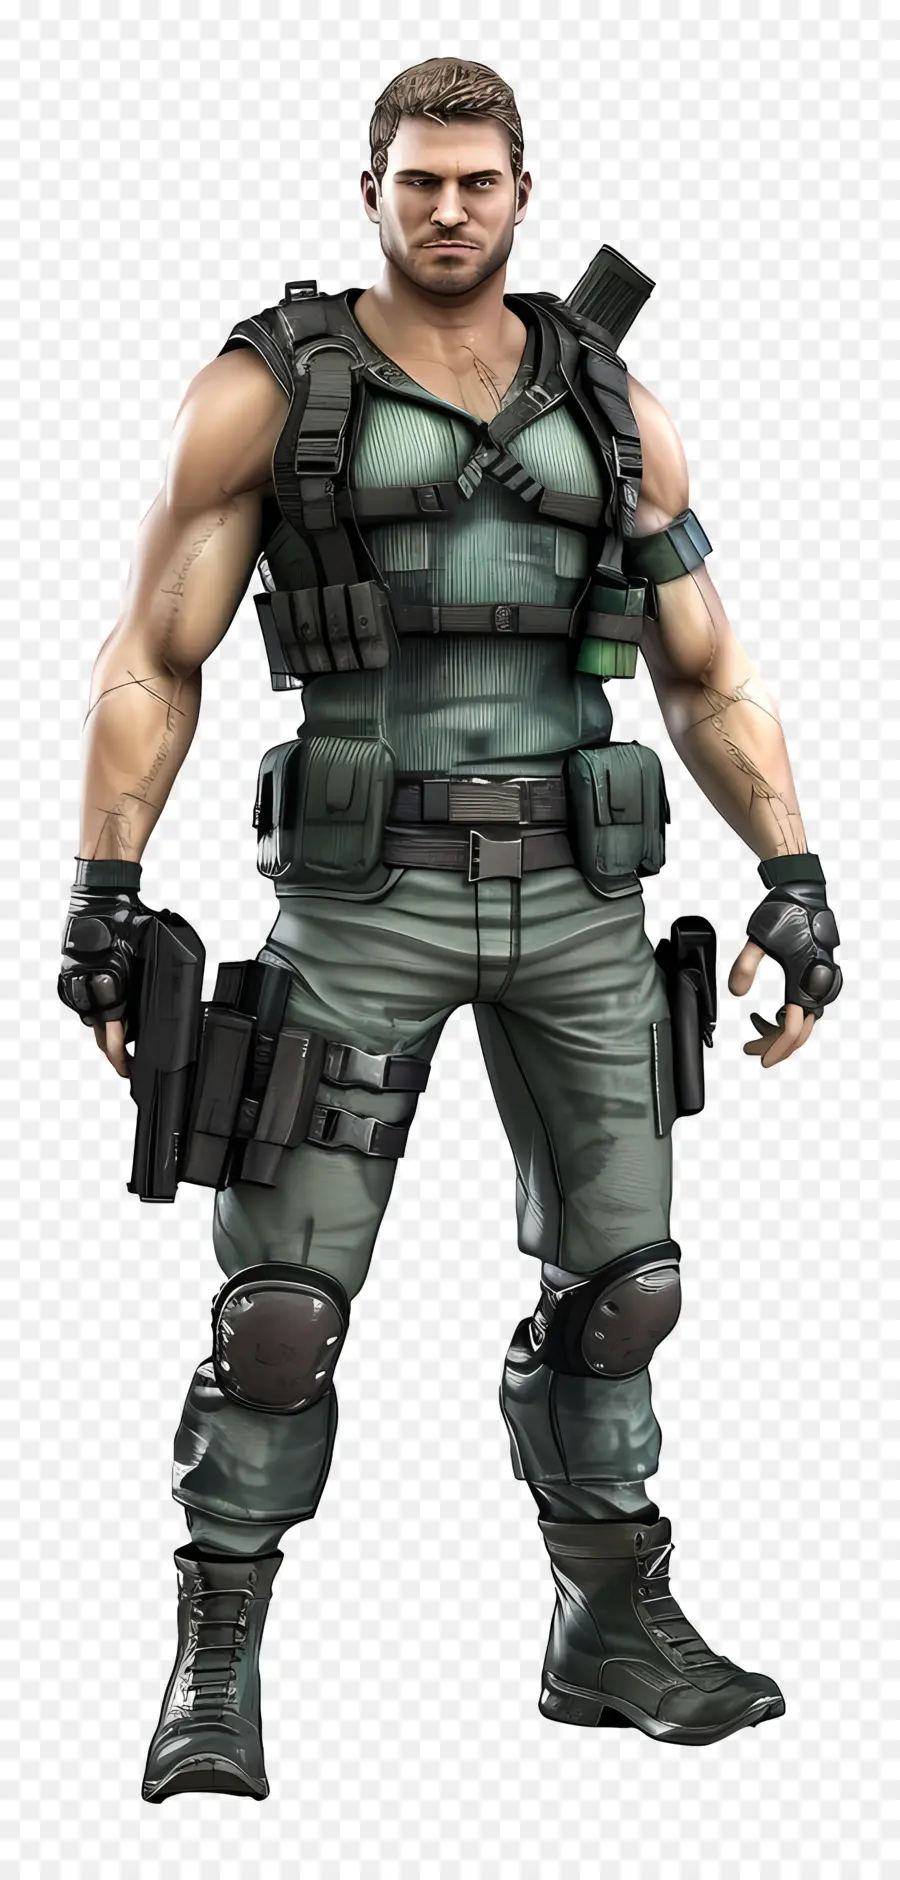 Chris Redfield Figura combattimento militare pistole mimetiche - Maschio in attrezzatura da combattimento con due pistole